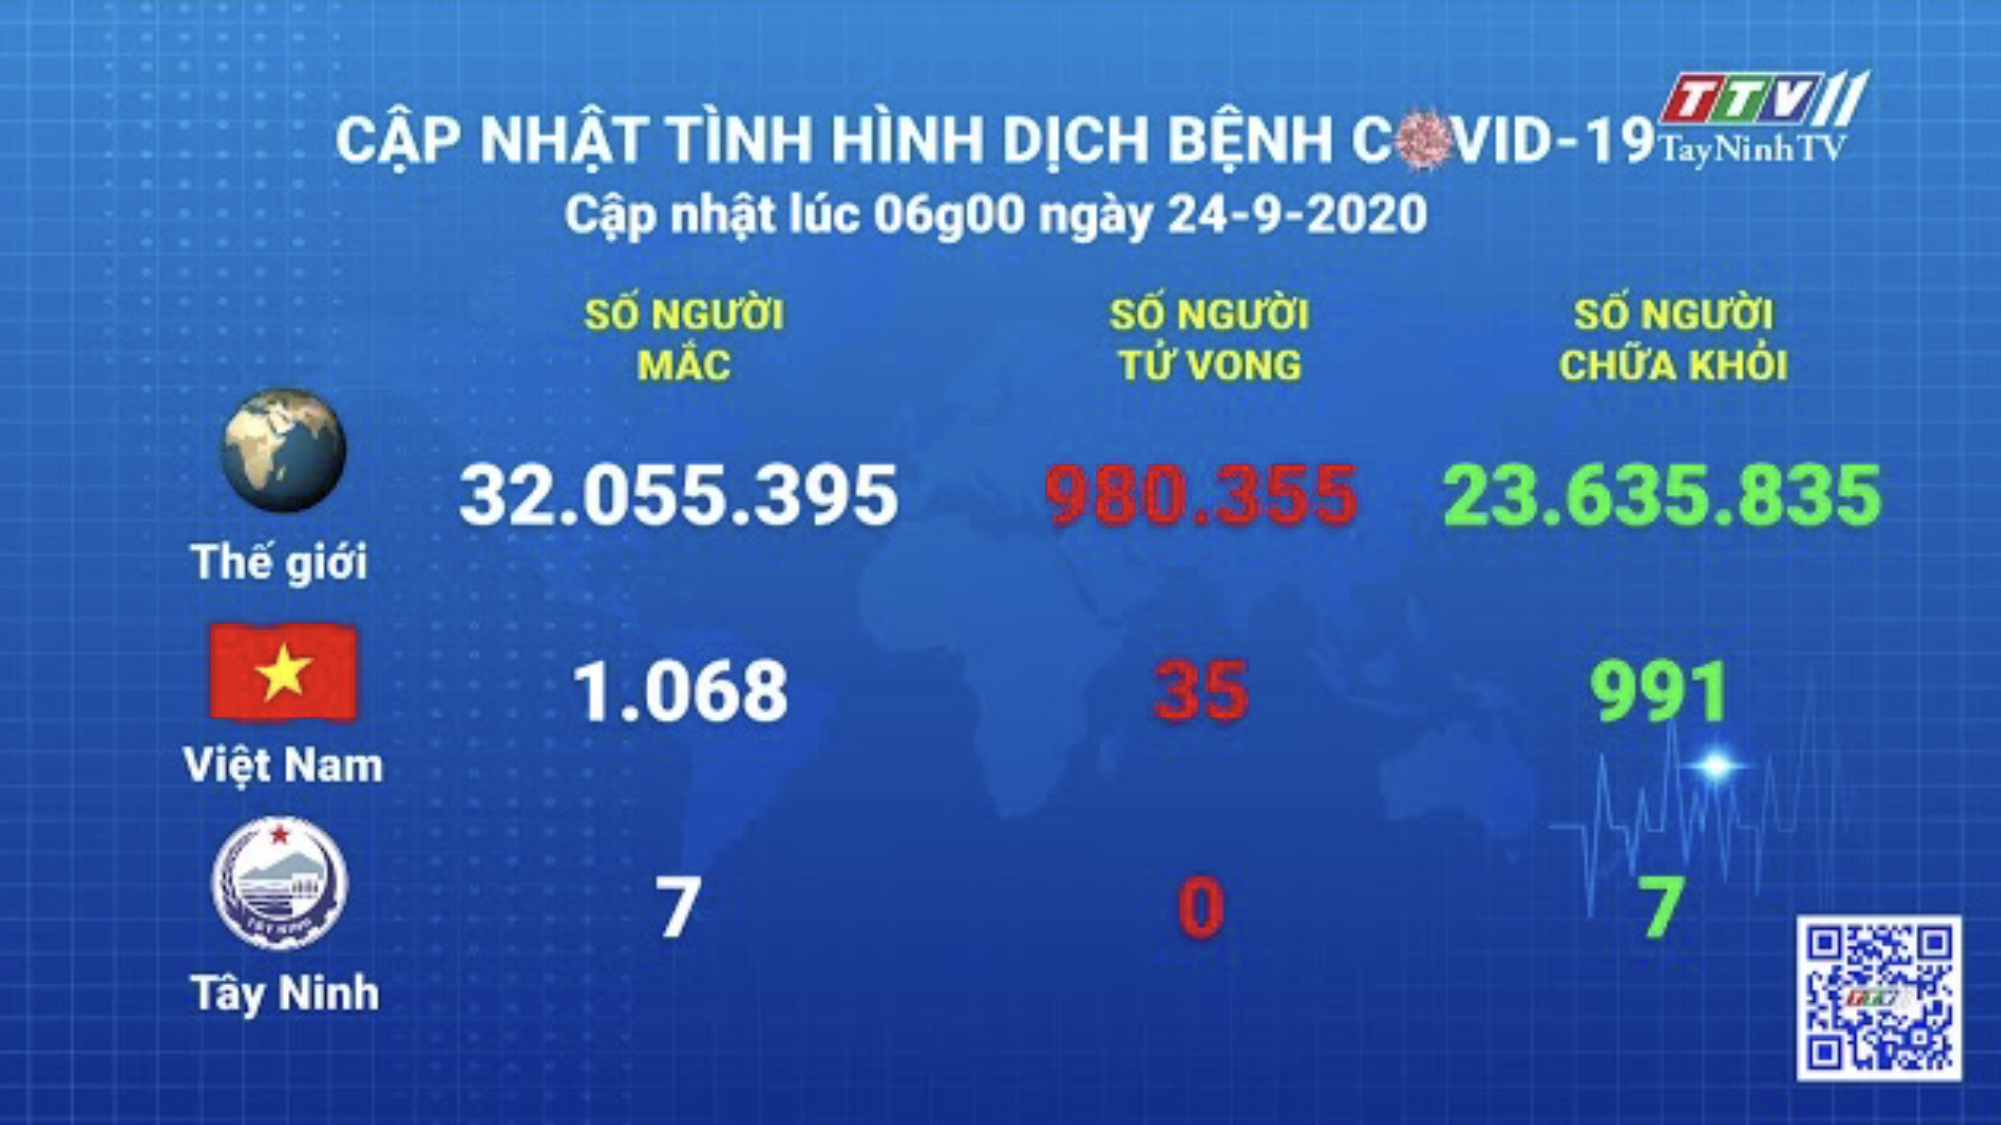 Cập nhật tình hình Covid-19 vào lúc 06 giờ 24-9-2020 | Thông tin dịch Covid-19 | TayNinhTV 